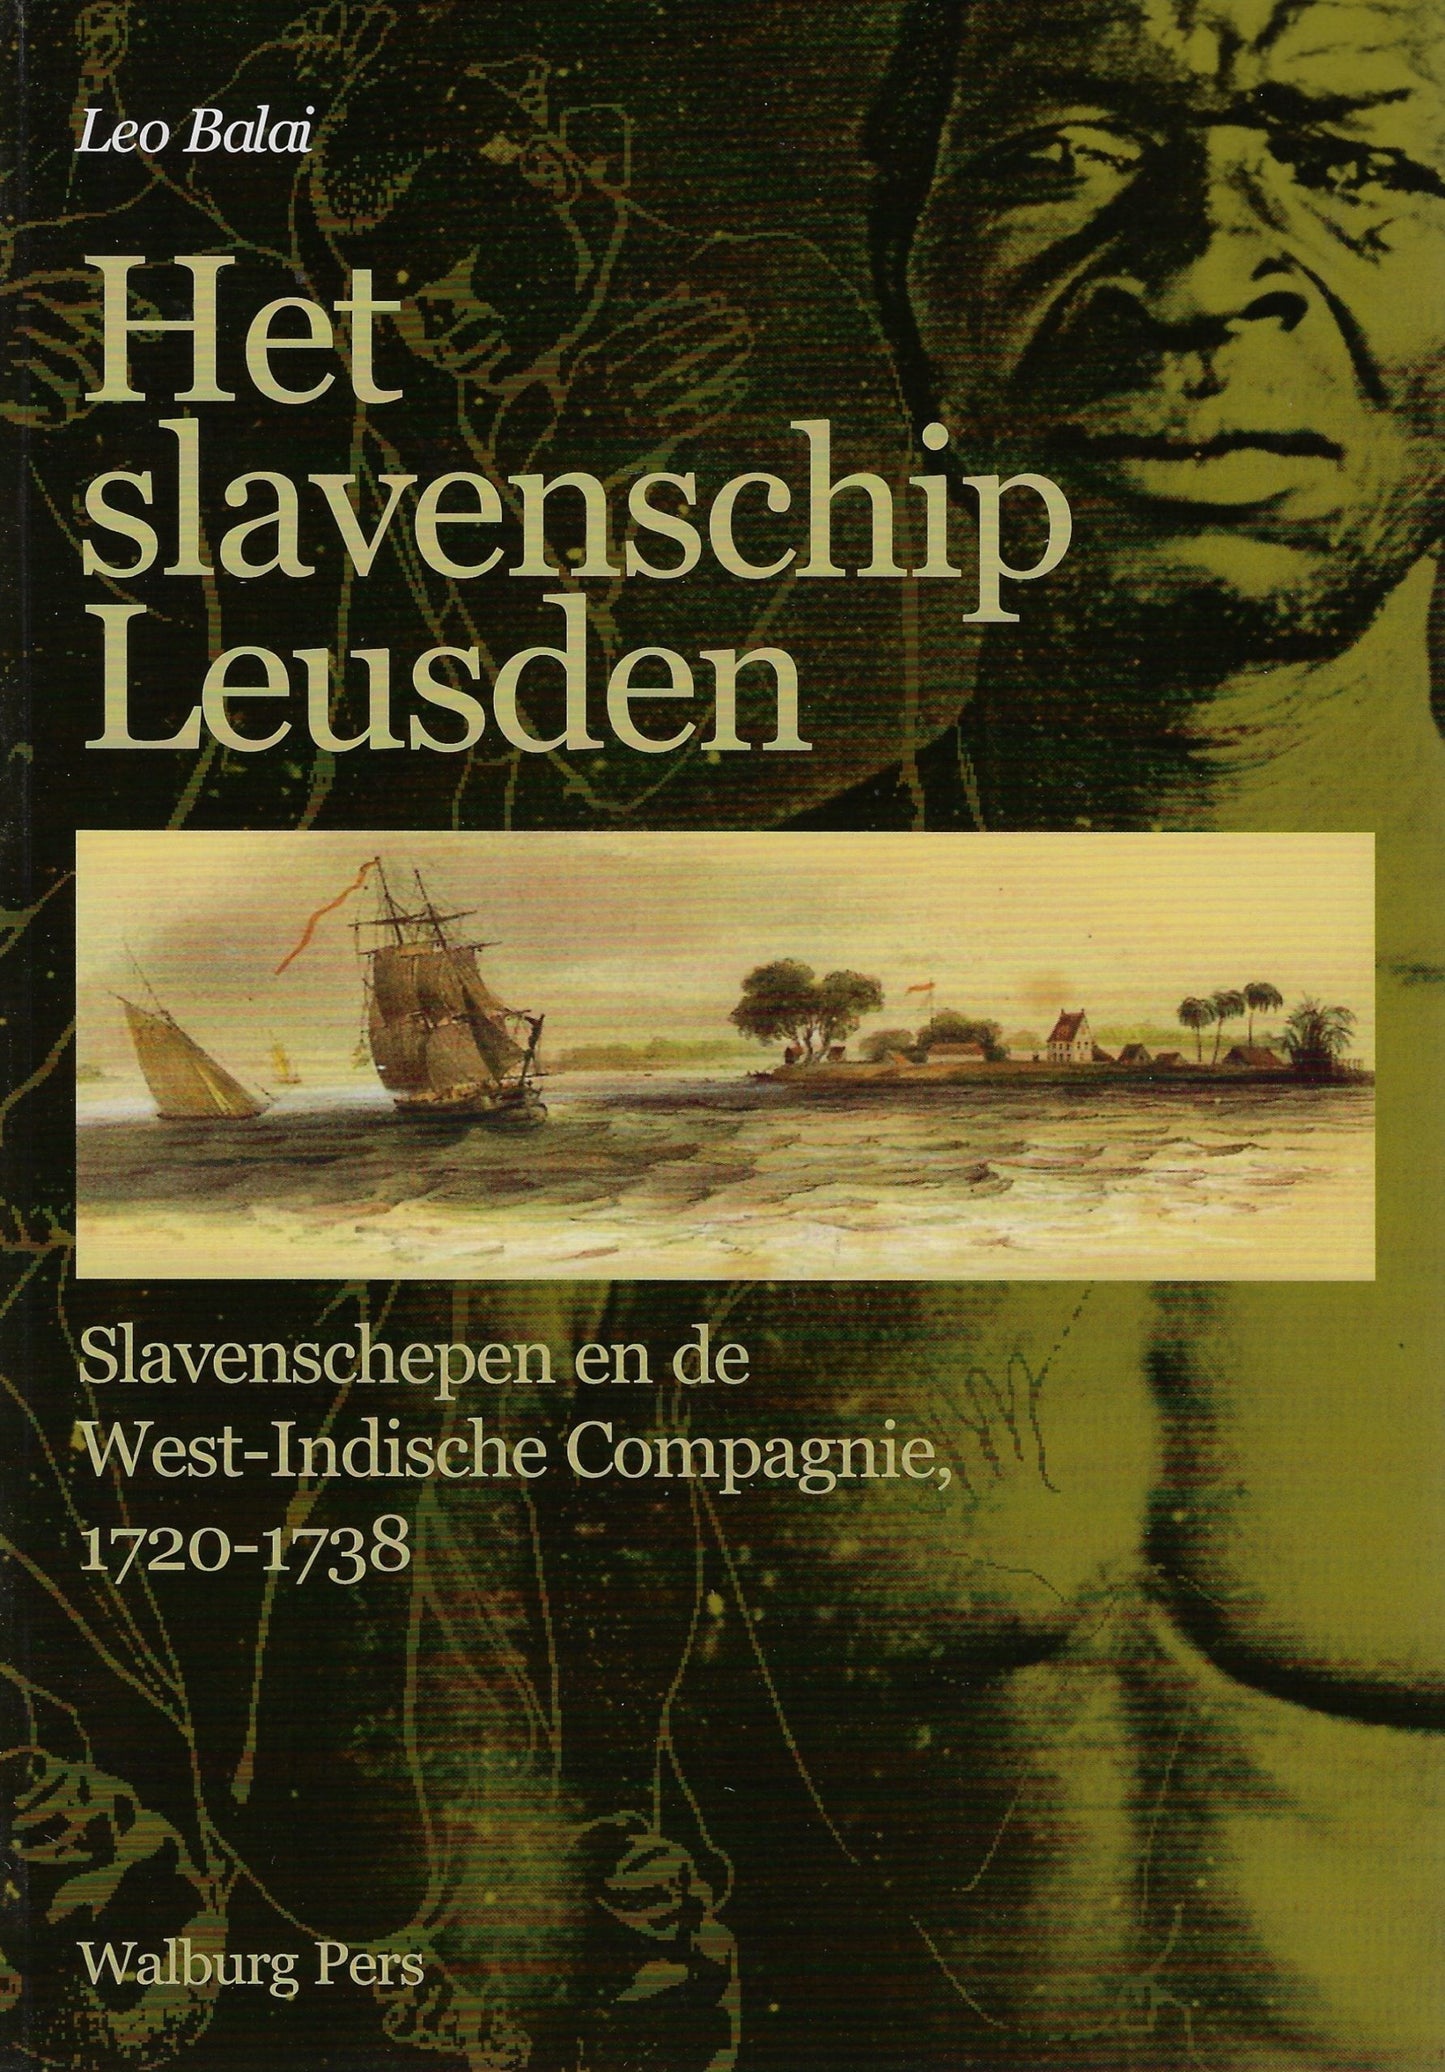 Het slavenschip Leusden / slavenschepen en de West Indische Compagnie 1720 - 1738